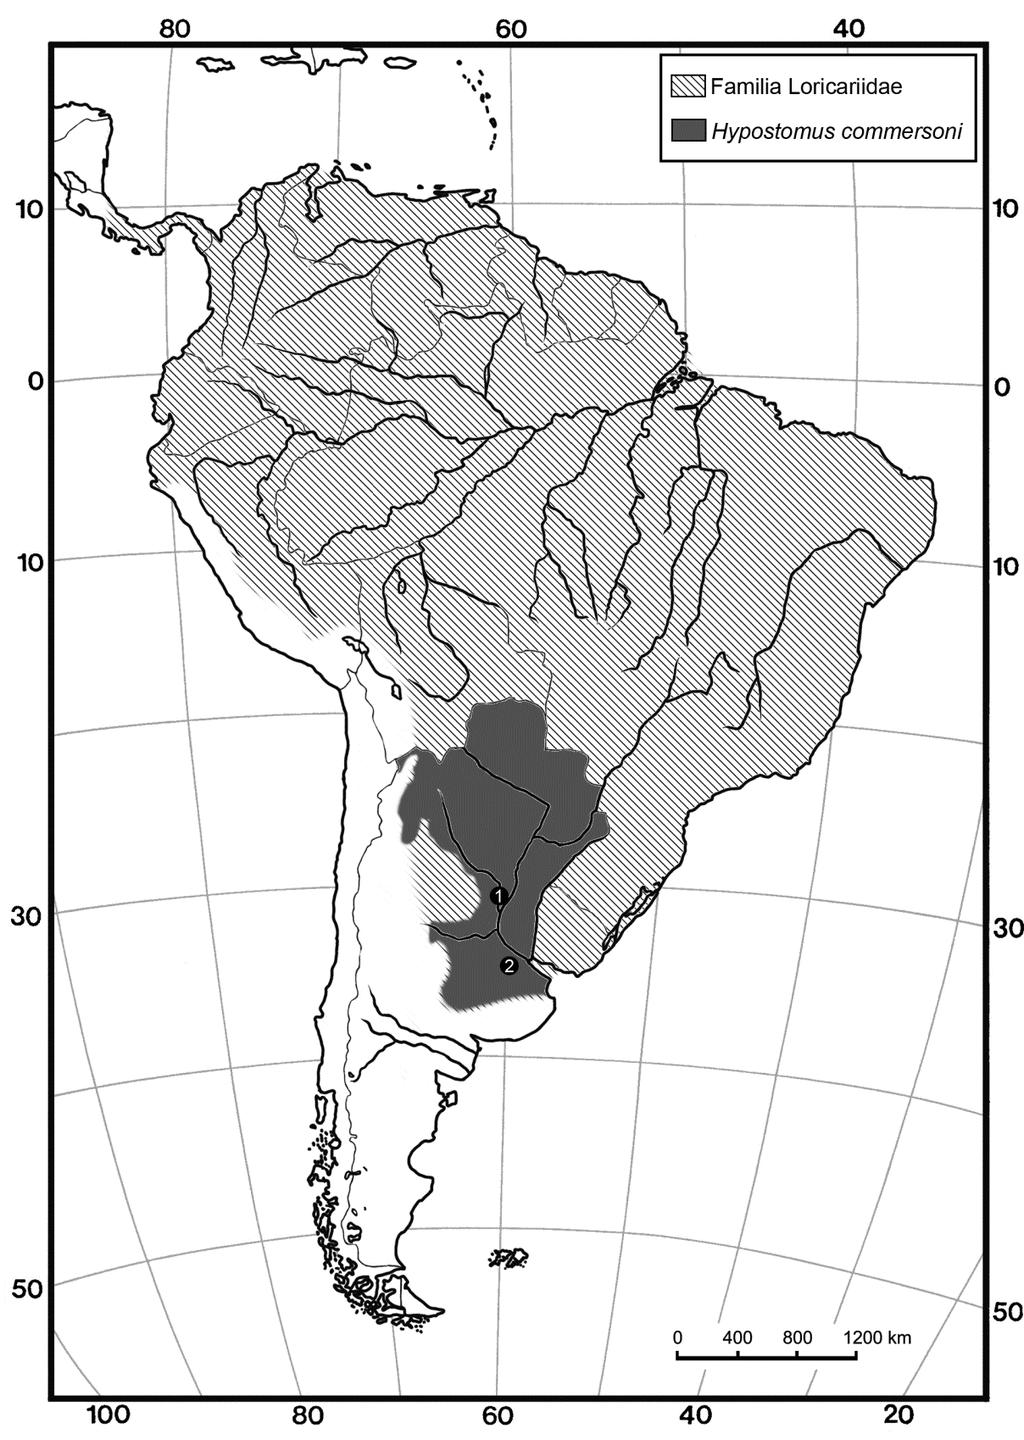 Amazonia, Lundberg (1997) ha identificado a cf. Acanthicus y cf. Hypostomus sp. en sedimentos miocenos del grupo La Venta en Colombia (Lundberg, 1997). Cione et al. (2005b) reporta Loricariidae indet.